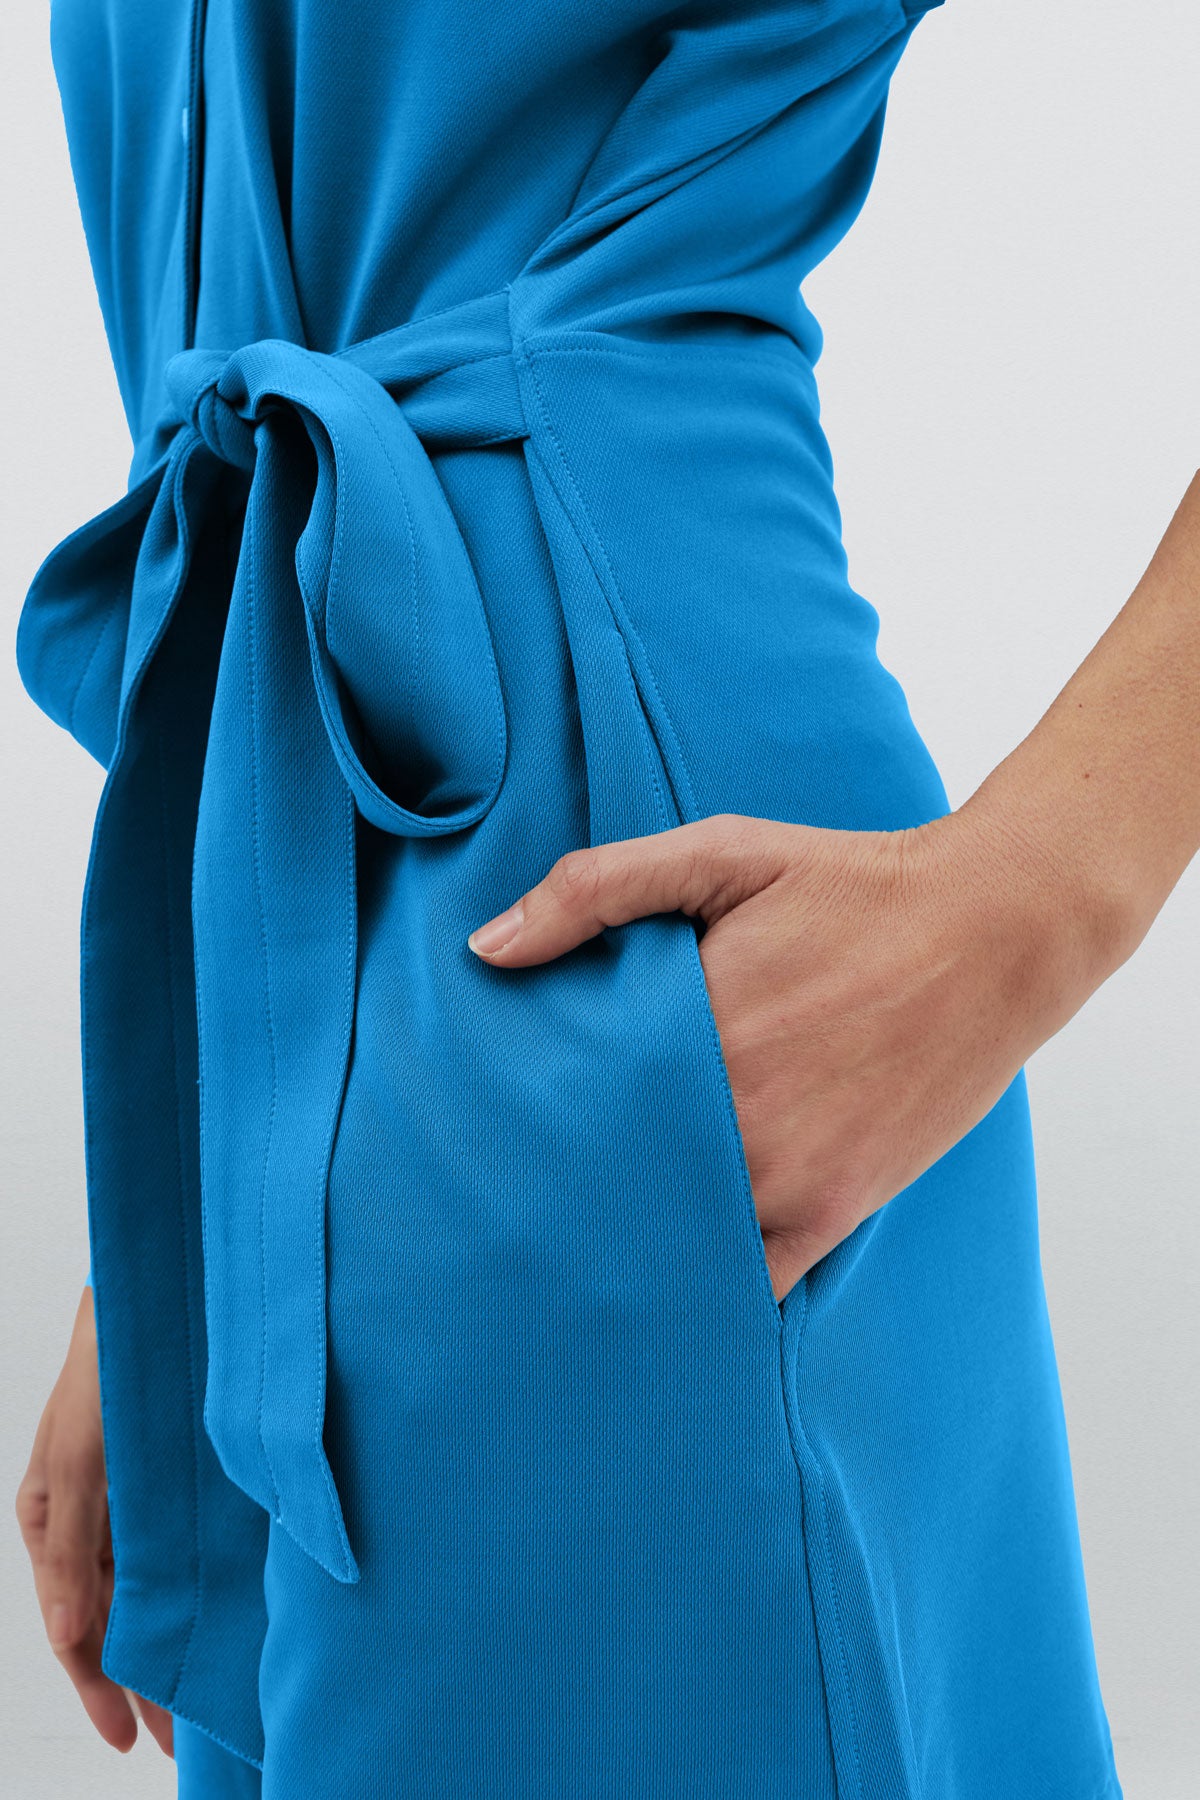 Mono corto de mujer color azul con detalle de cinturón y bolsillos laterales para mayor comodidad. Foto detalle